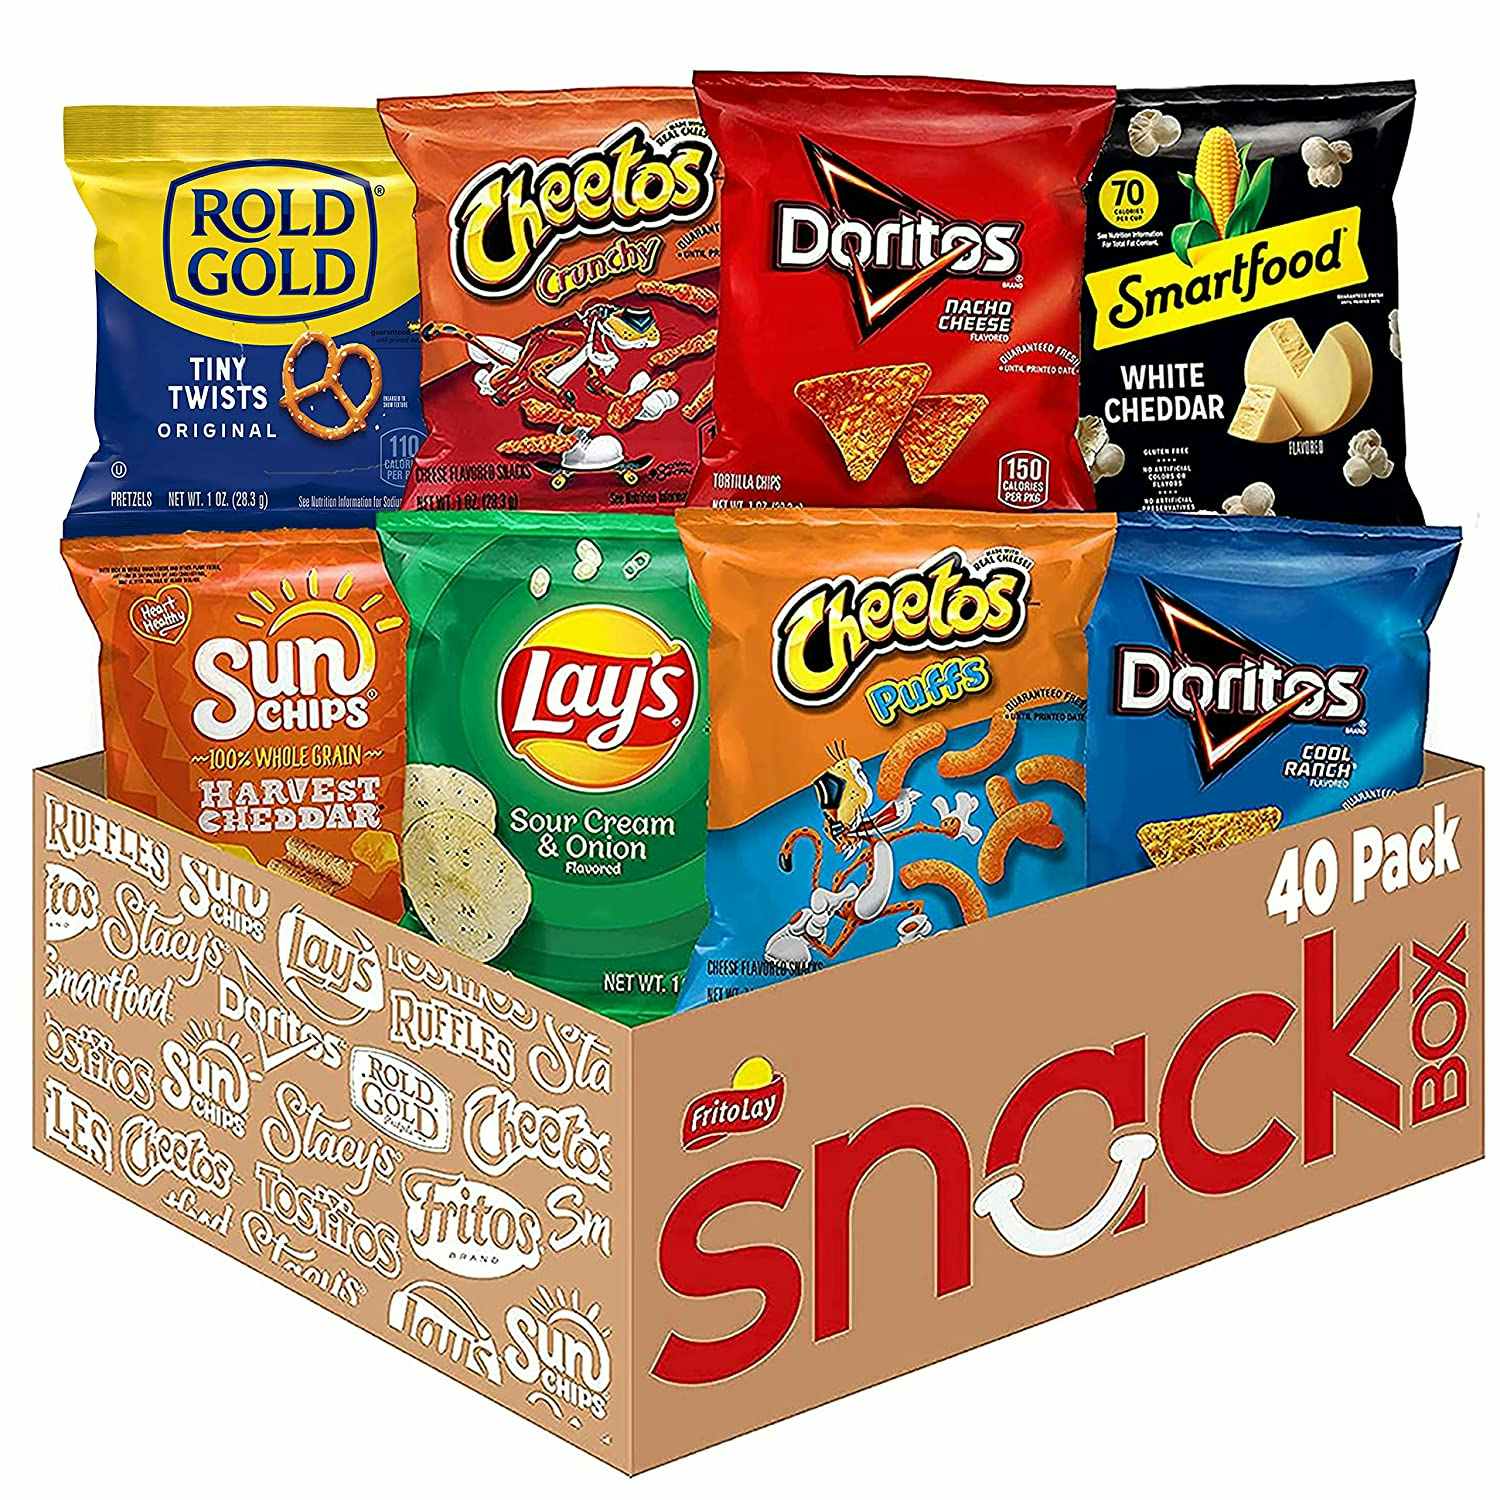 A box of 40 Frito-Lay snacks bags.